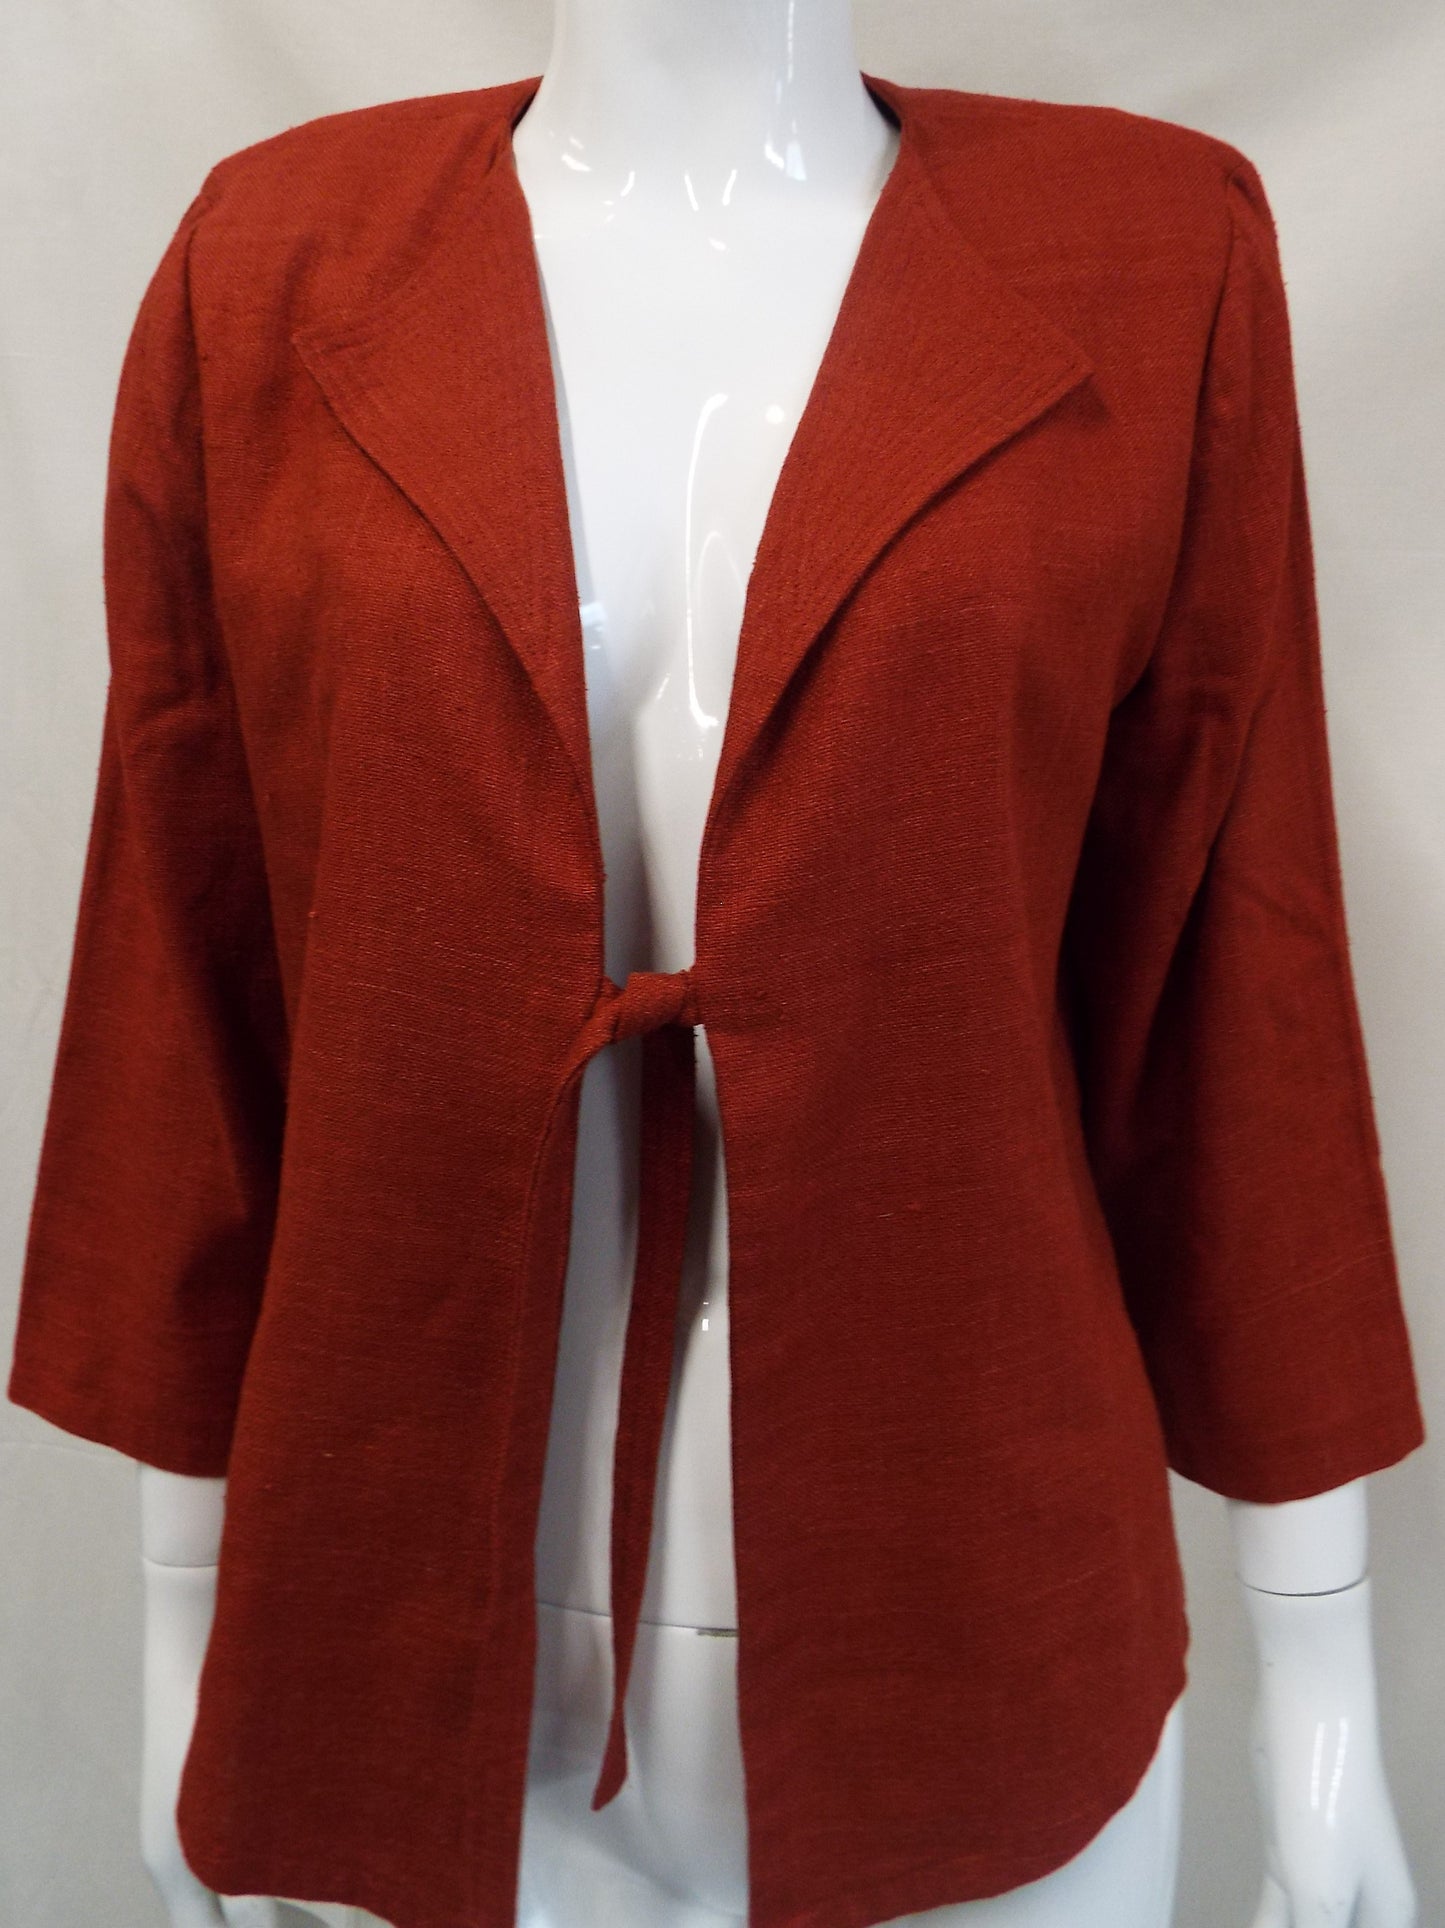 Vintage Burnt Orange Jacket Size 14-16